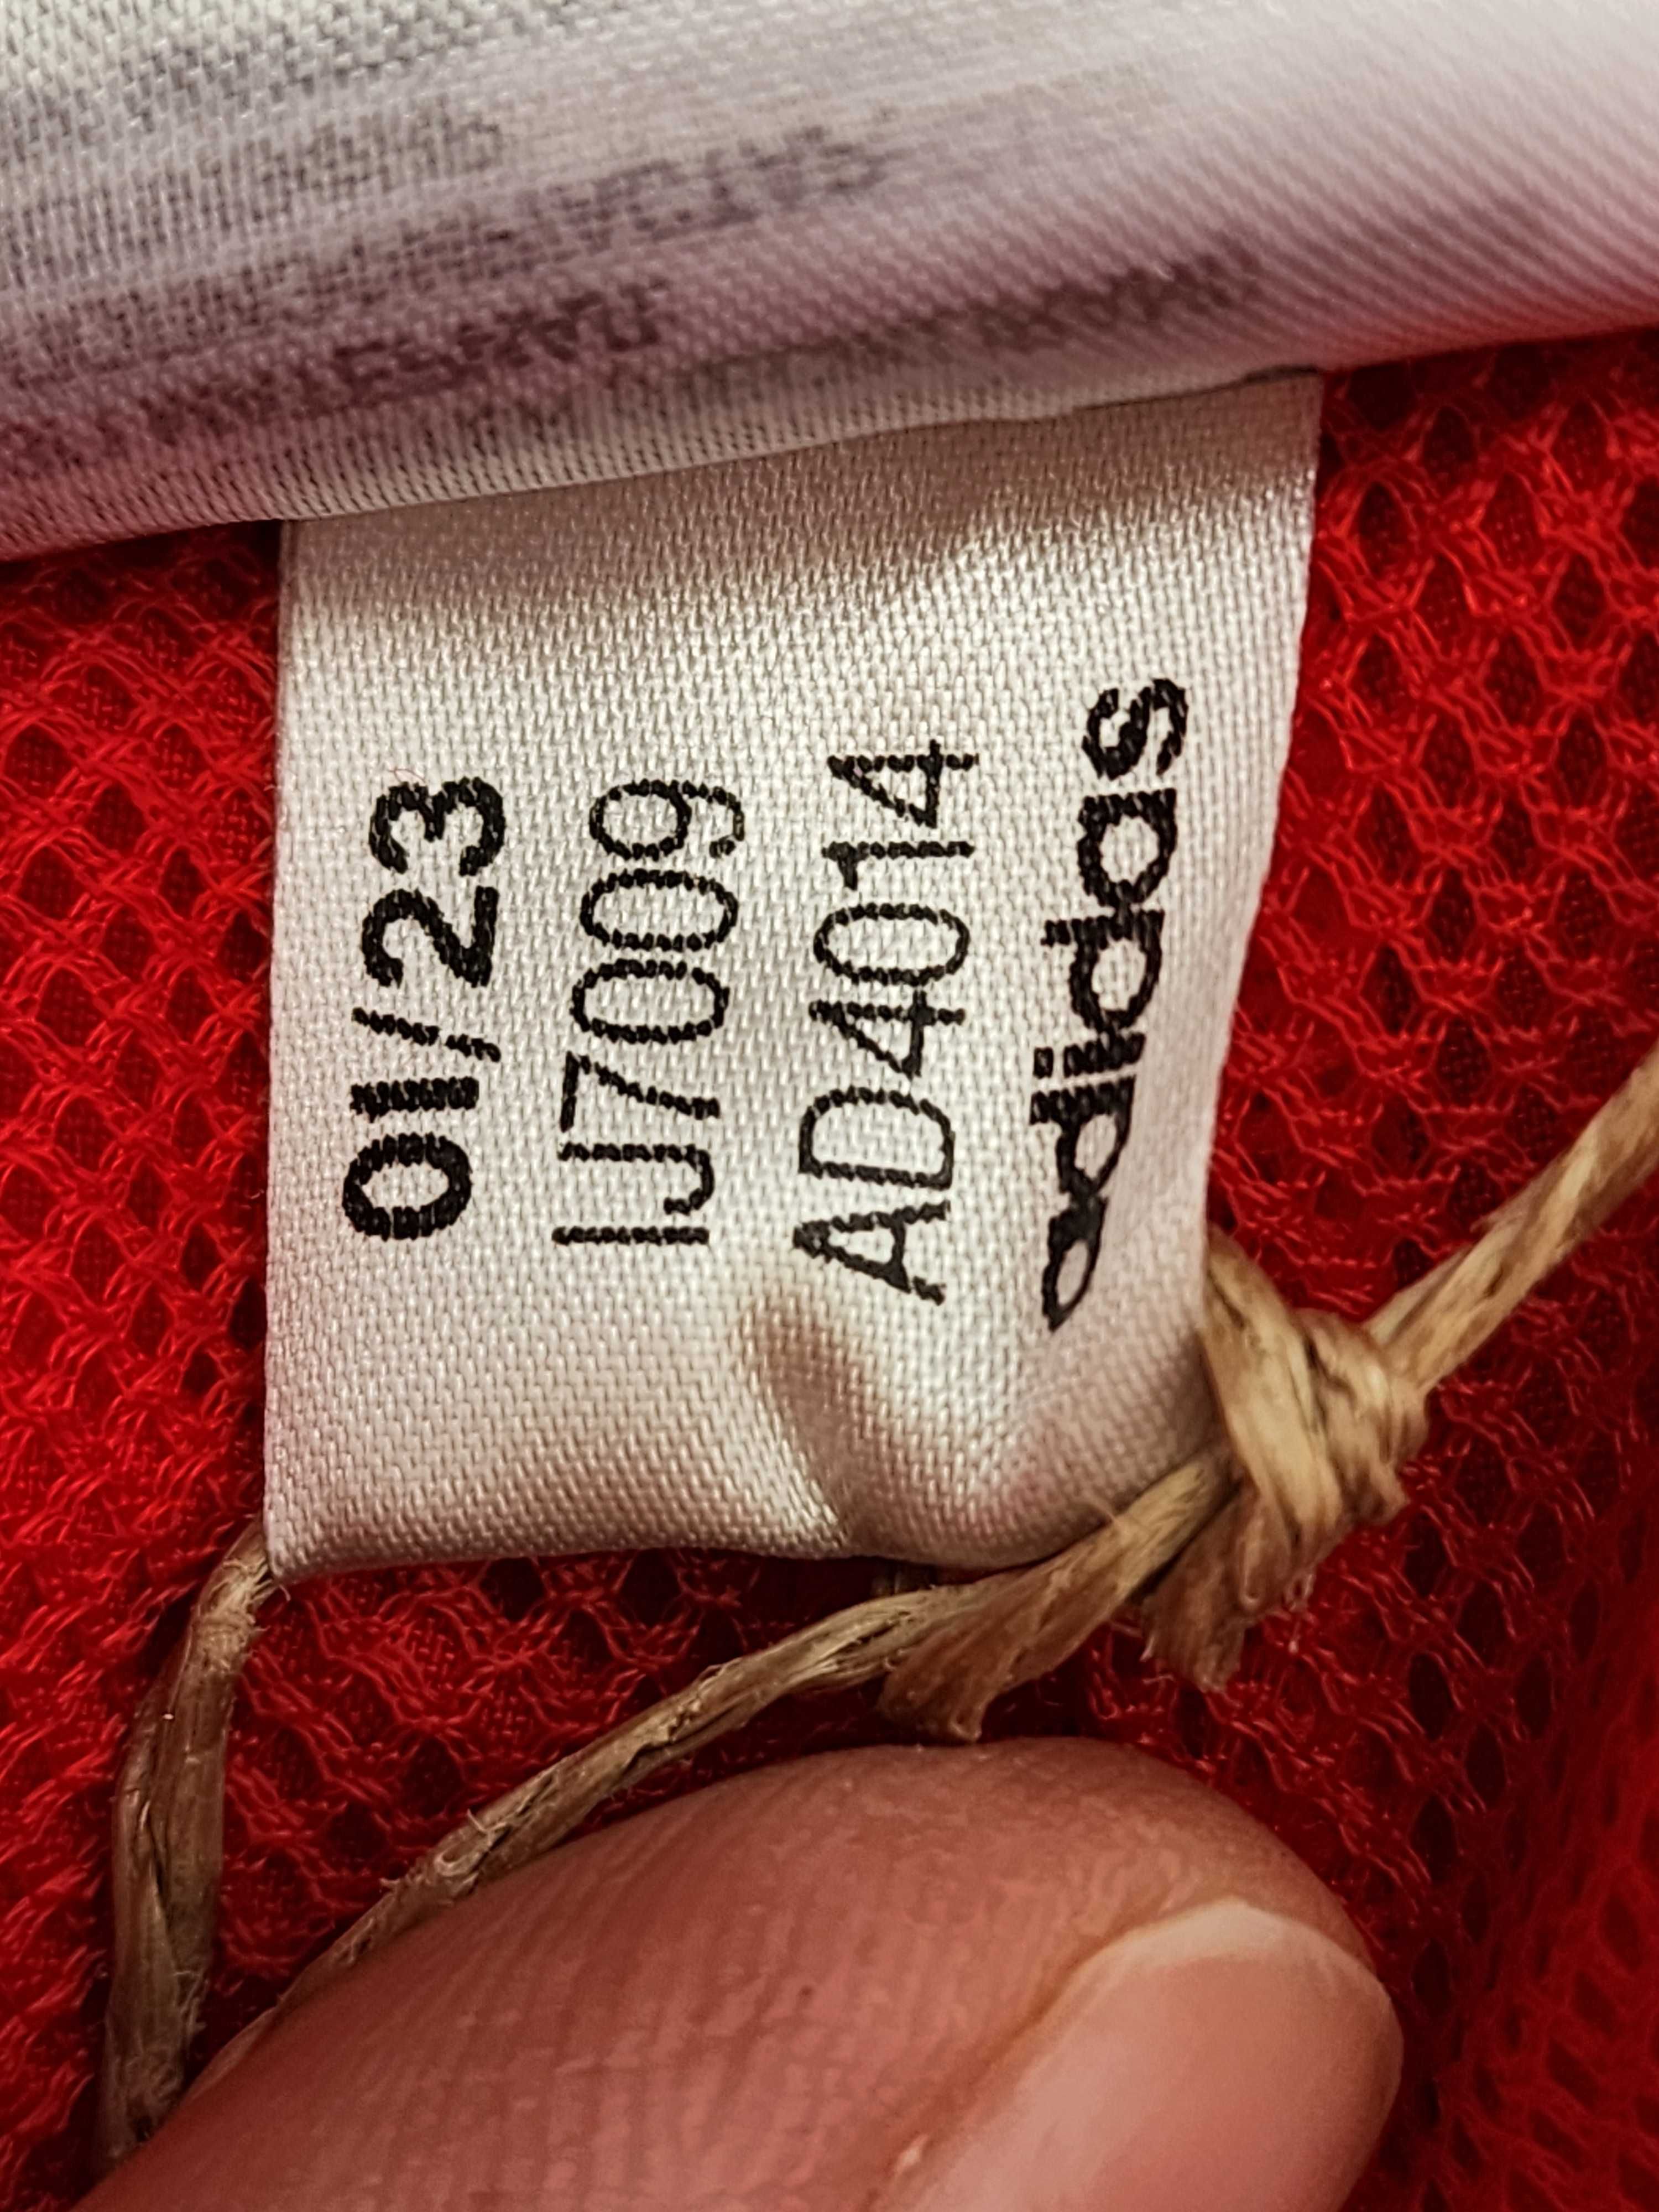 Пляжные шорты Adidas. Размер XL.